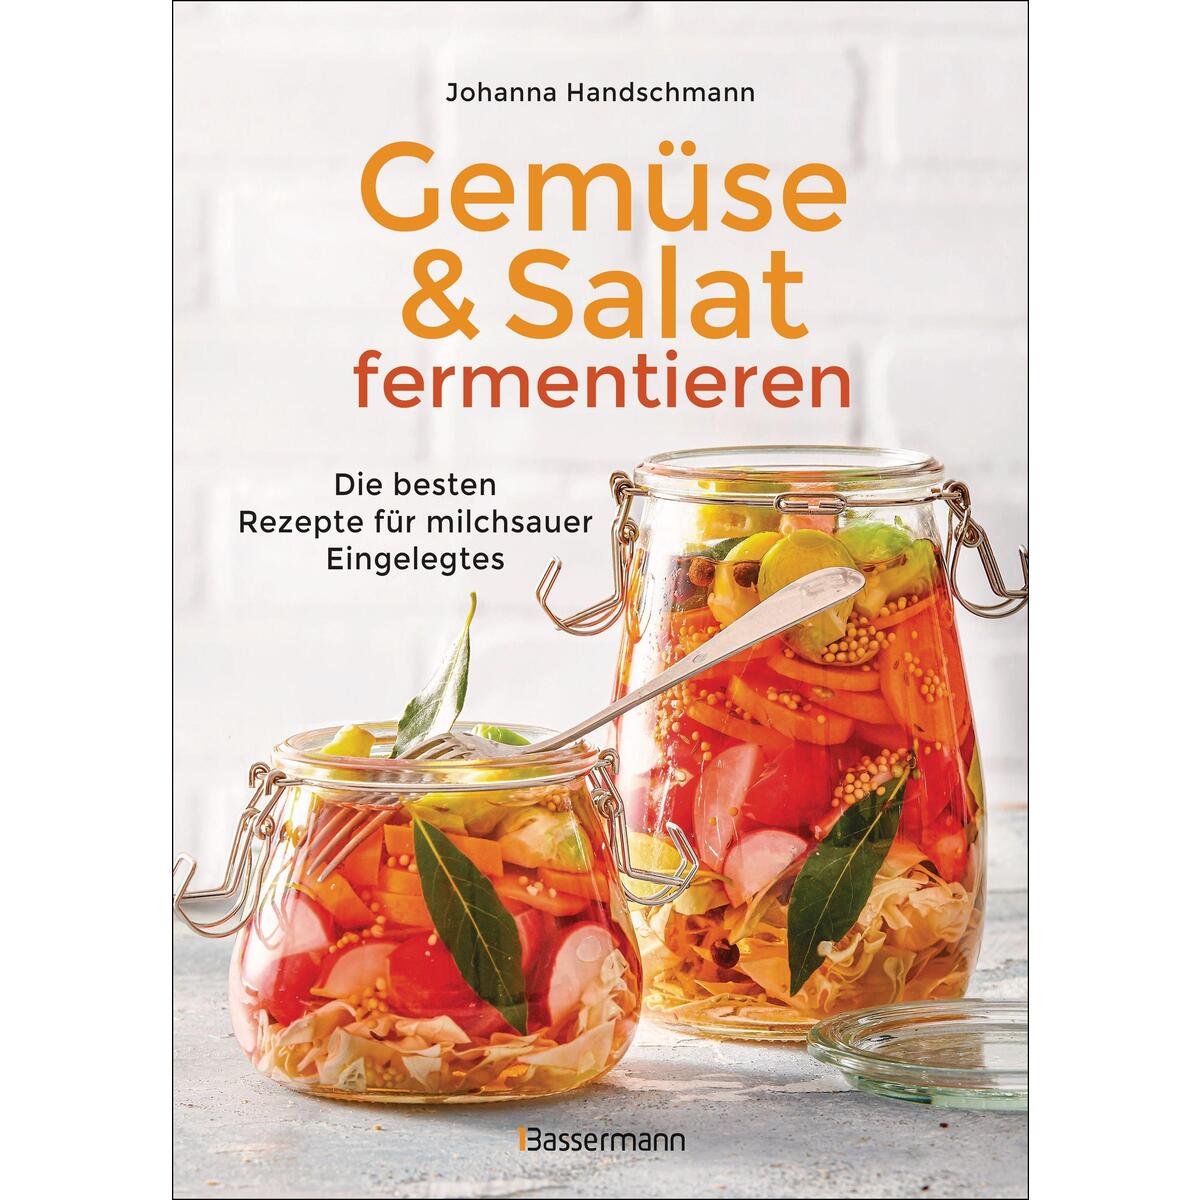 Gemüse und Salat fermentieren. Die besten Rezepte für milchsauer Eingelegtes von Bassermann, Edition